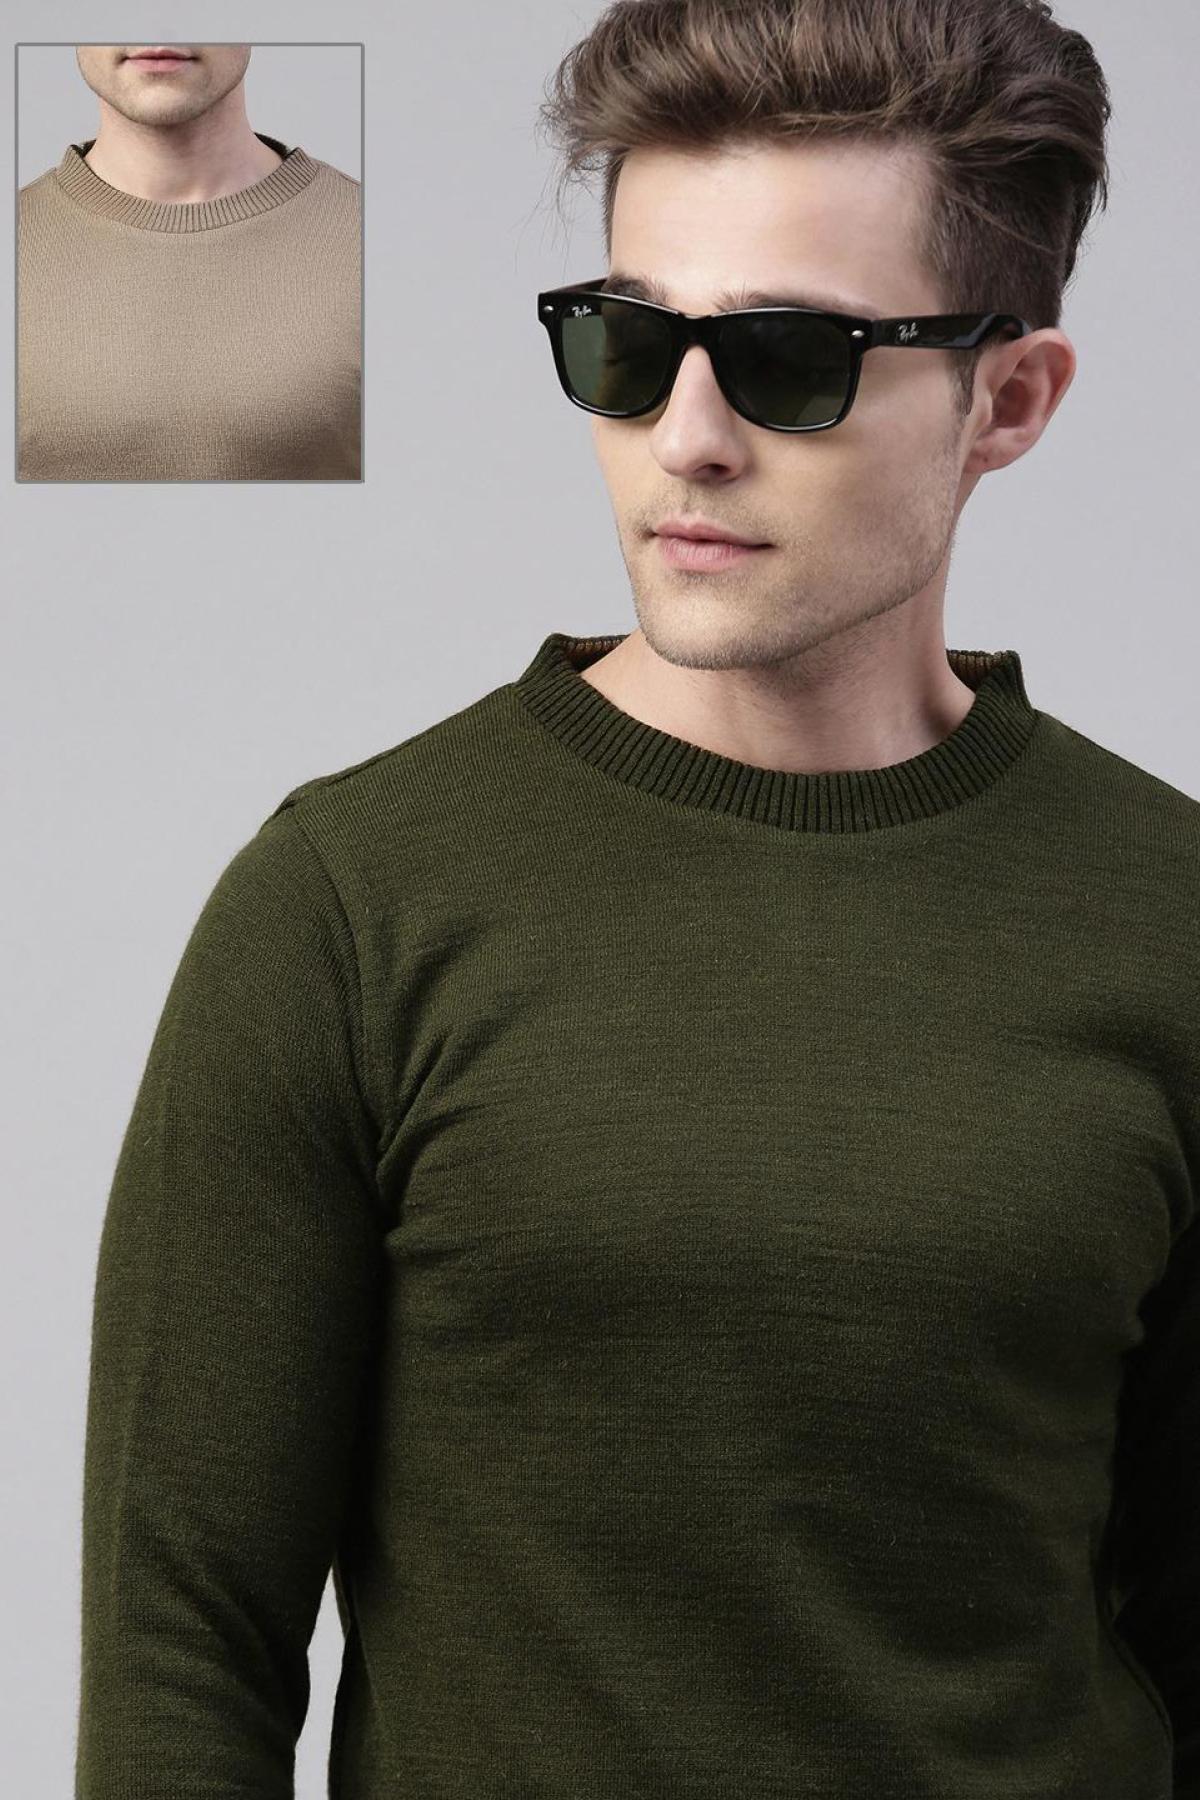 Olive & Camel Merino Blend Reversible Sweater|Men